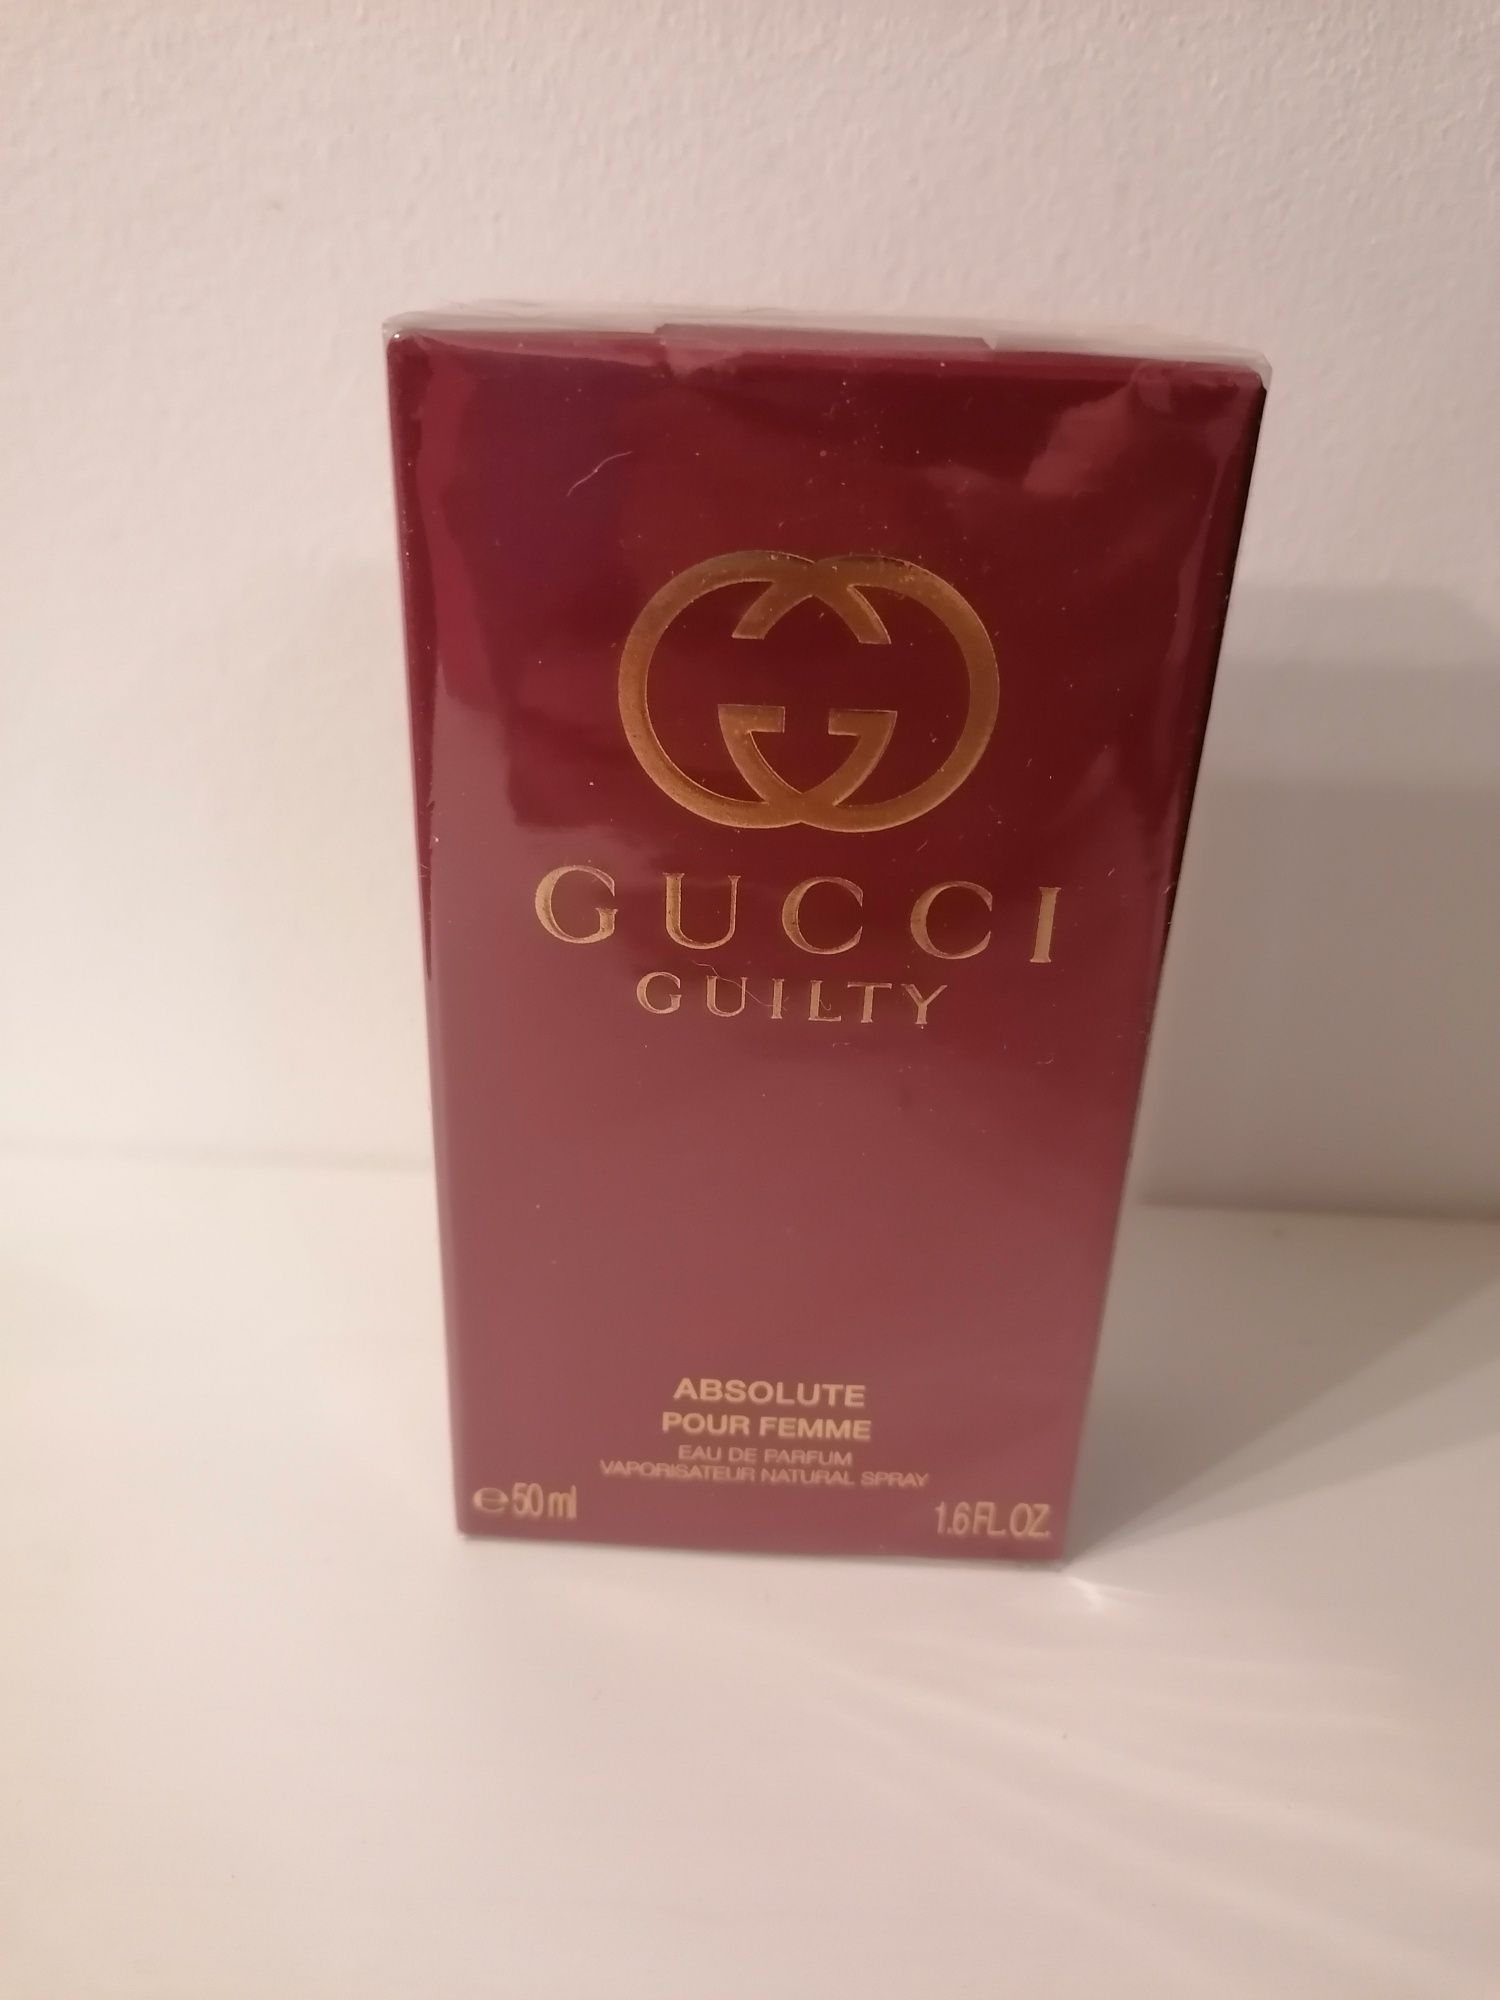 Gucci Guilty Absolute pour femme eau de parfum 50ml nowe